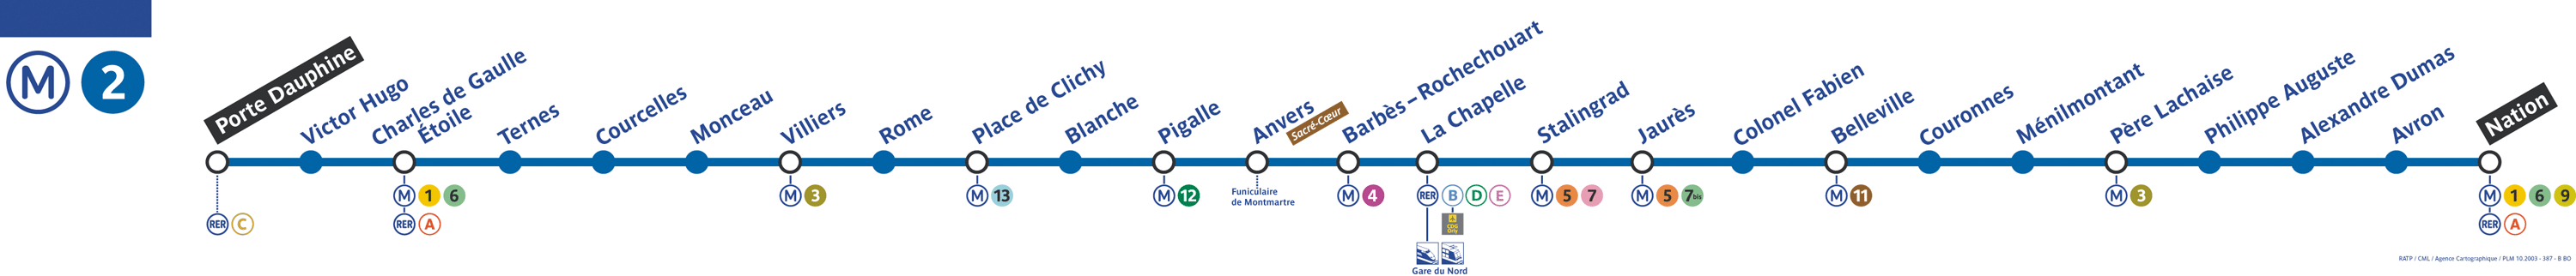 Plan ligne 2 métro de Paris